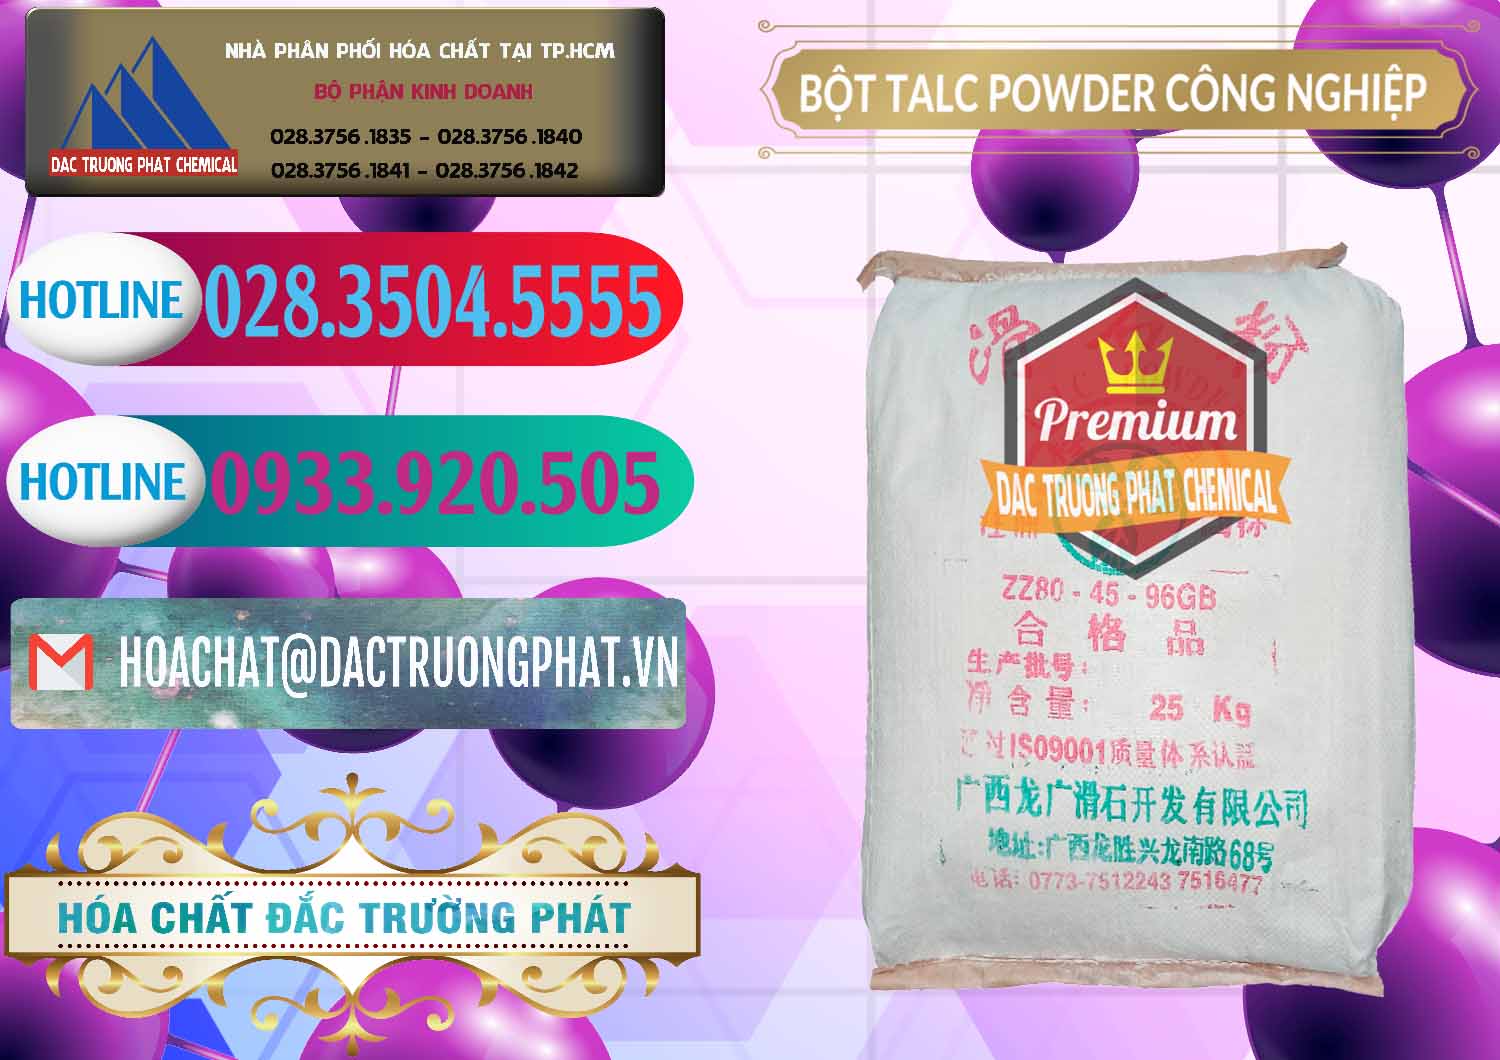 Công ty chuyên bán và cung ứng Bột Talc Powder Công Nghiệp Trung Quốc China - 0037 - Đơn vị chuyên nhập khẩu & cung cấp hóa chất tại TP.HCM - truongphat.vn